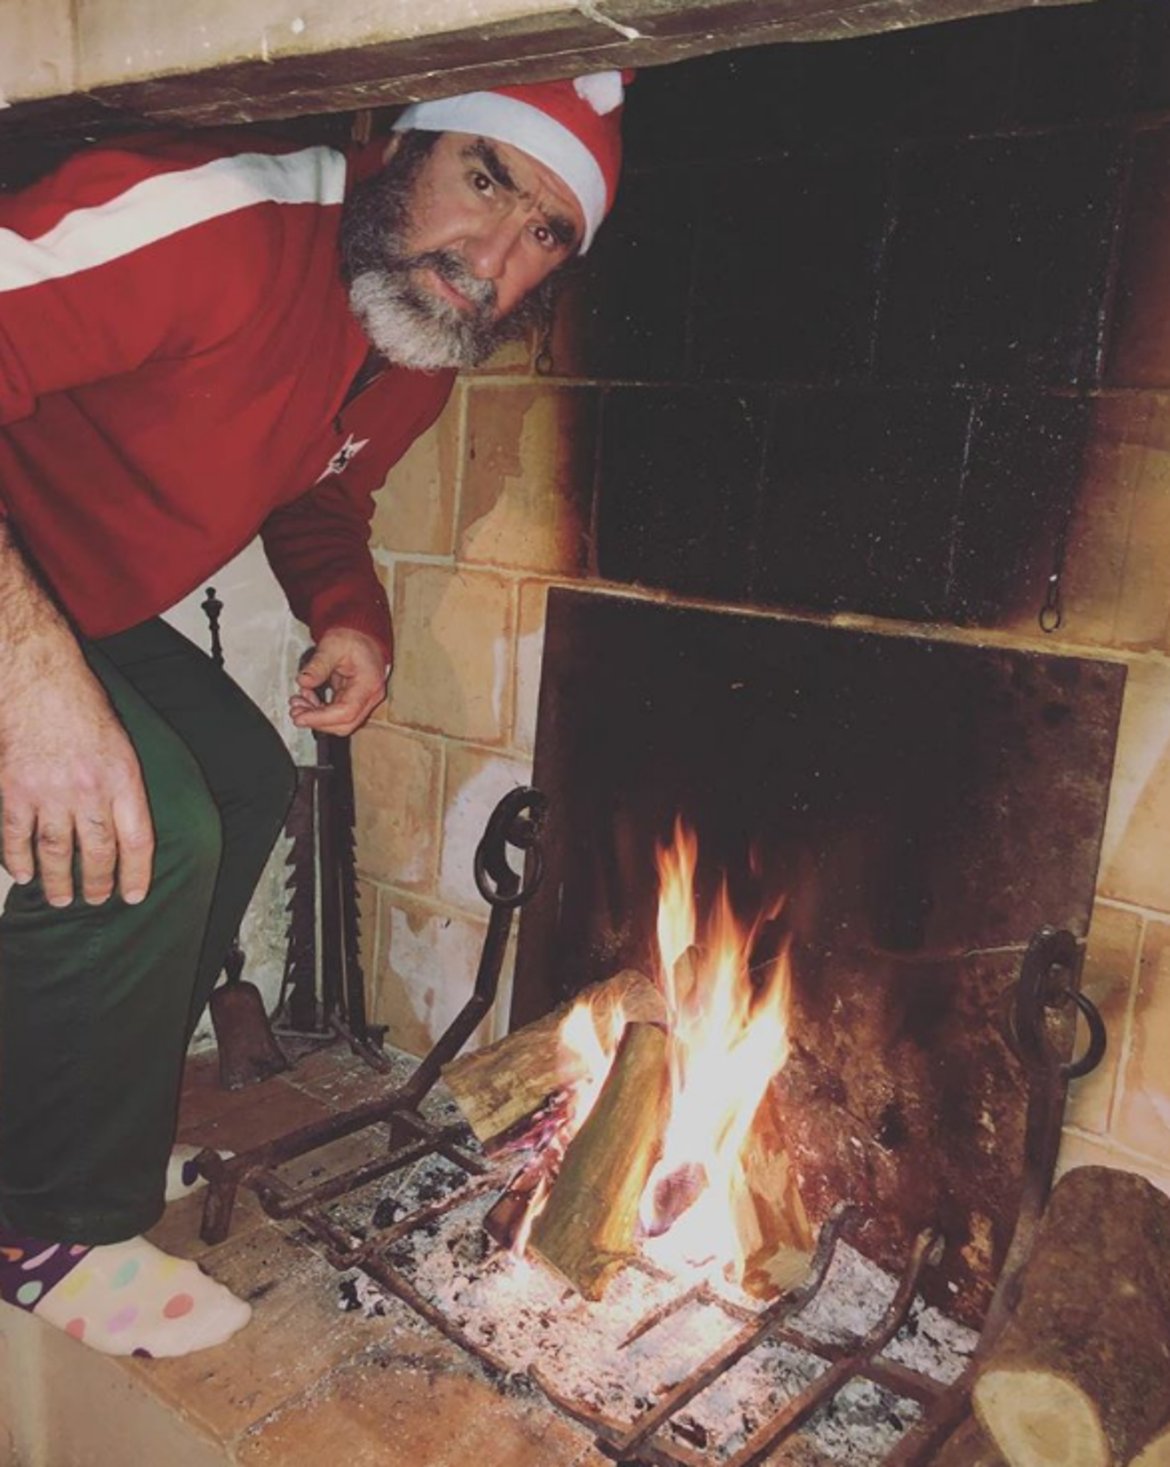 Ерик Кантона качи в Instagram снимка, на която е дегизиран като Дядо Коледа и се кани да се измъкне от къщата през камината